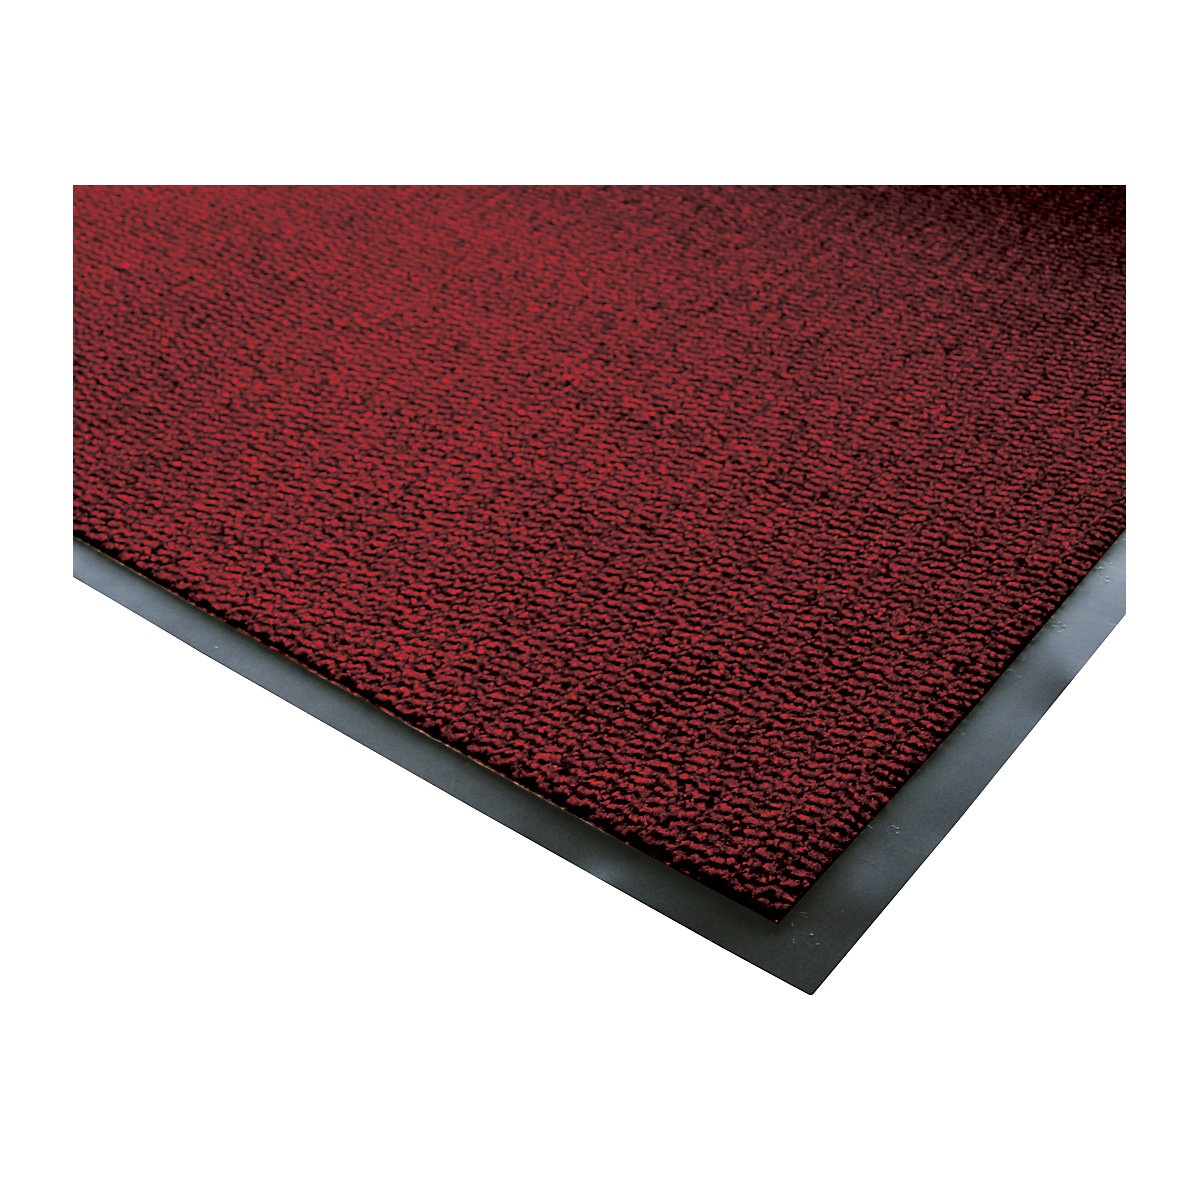 Covoraș de interior pentru reținerea impurităților, fibre din polipropilenă – COBA, lung. x lăț. 1200 x 900 mm, negru / roșu